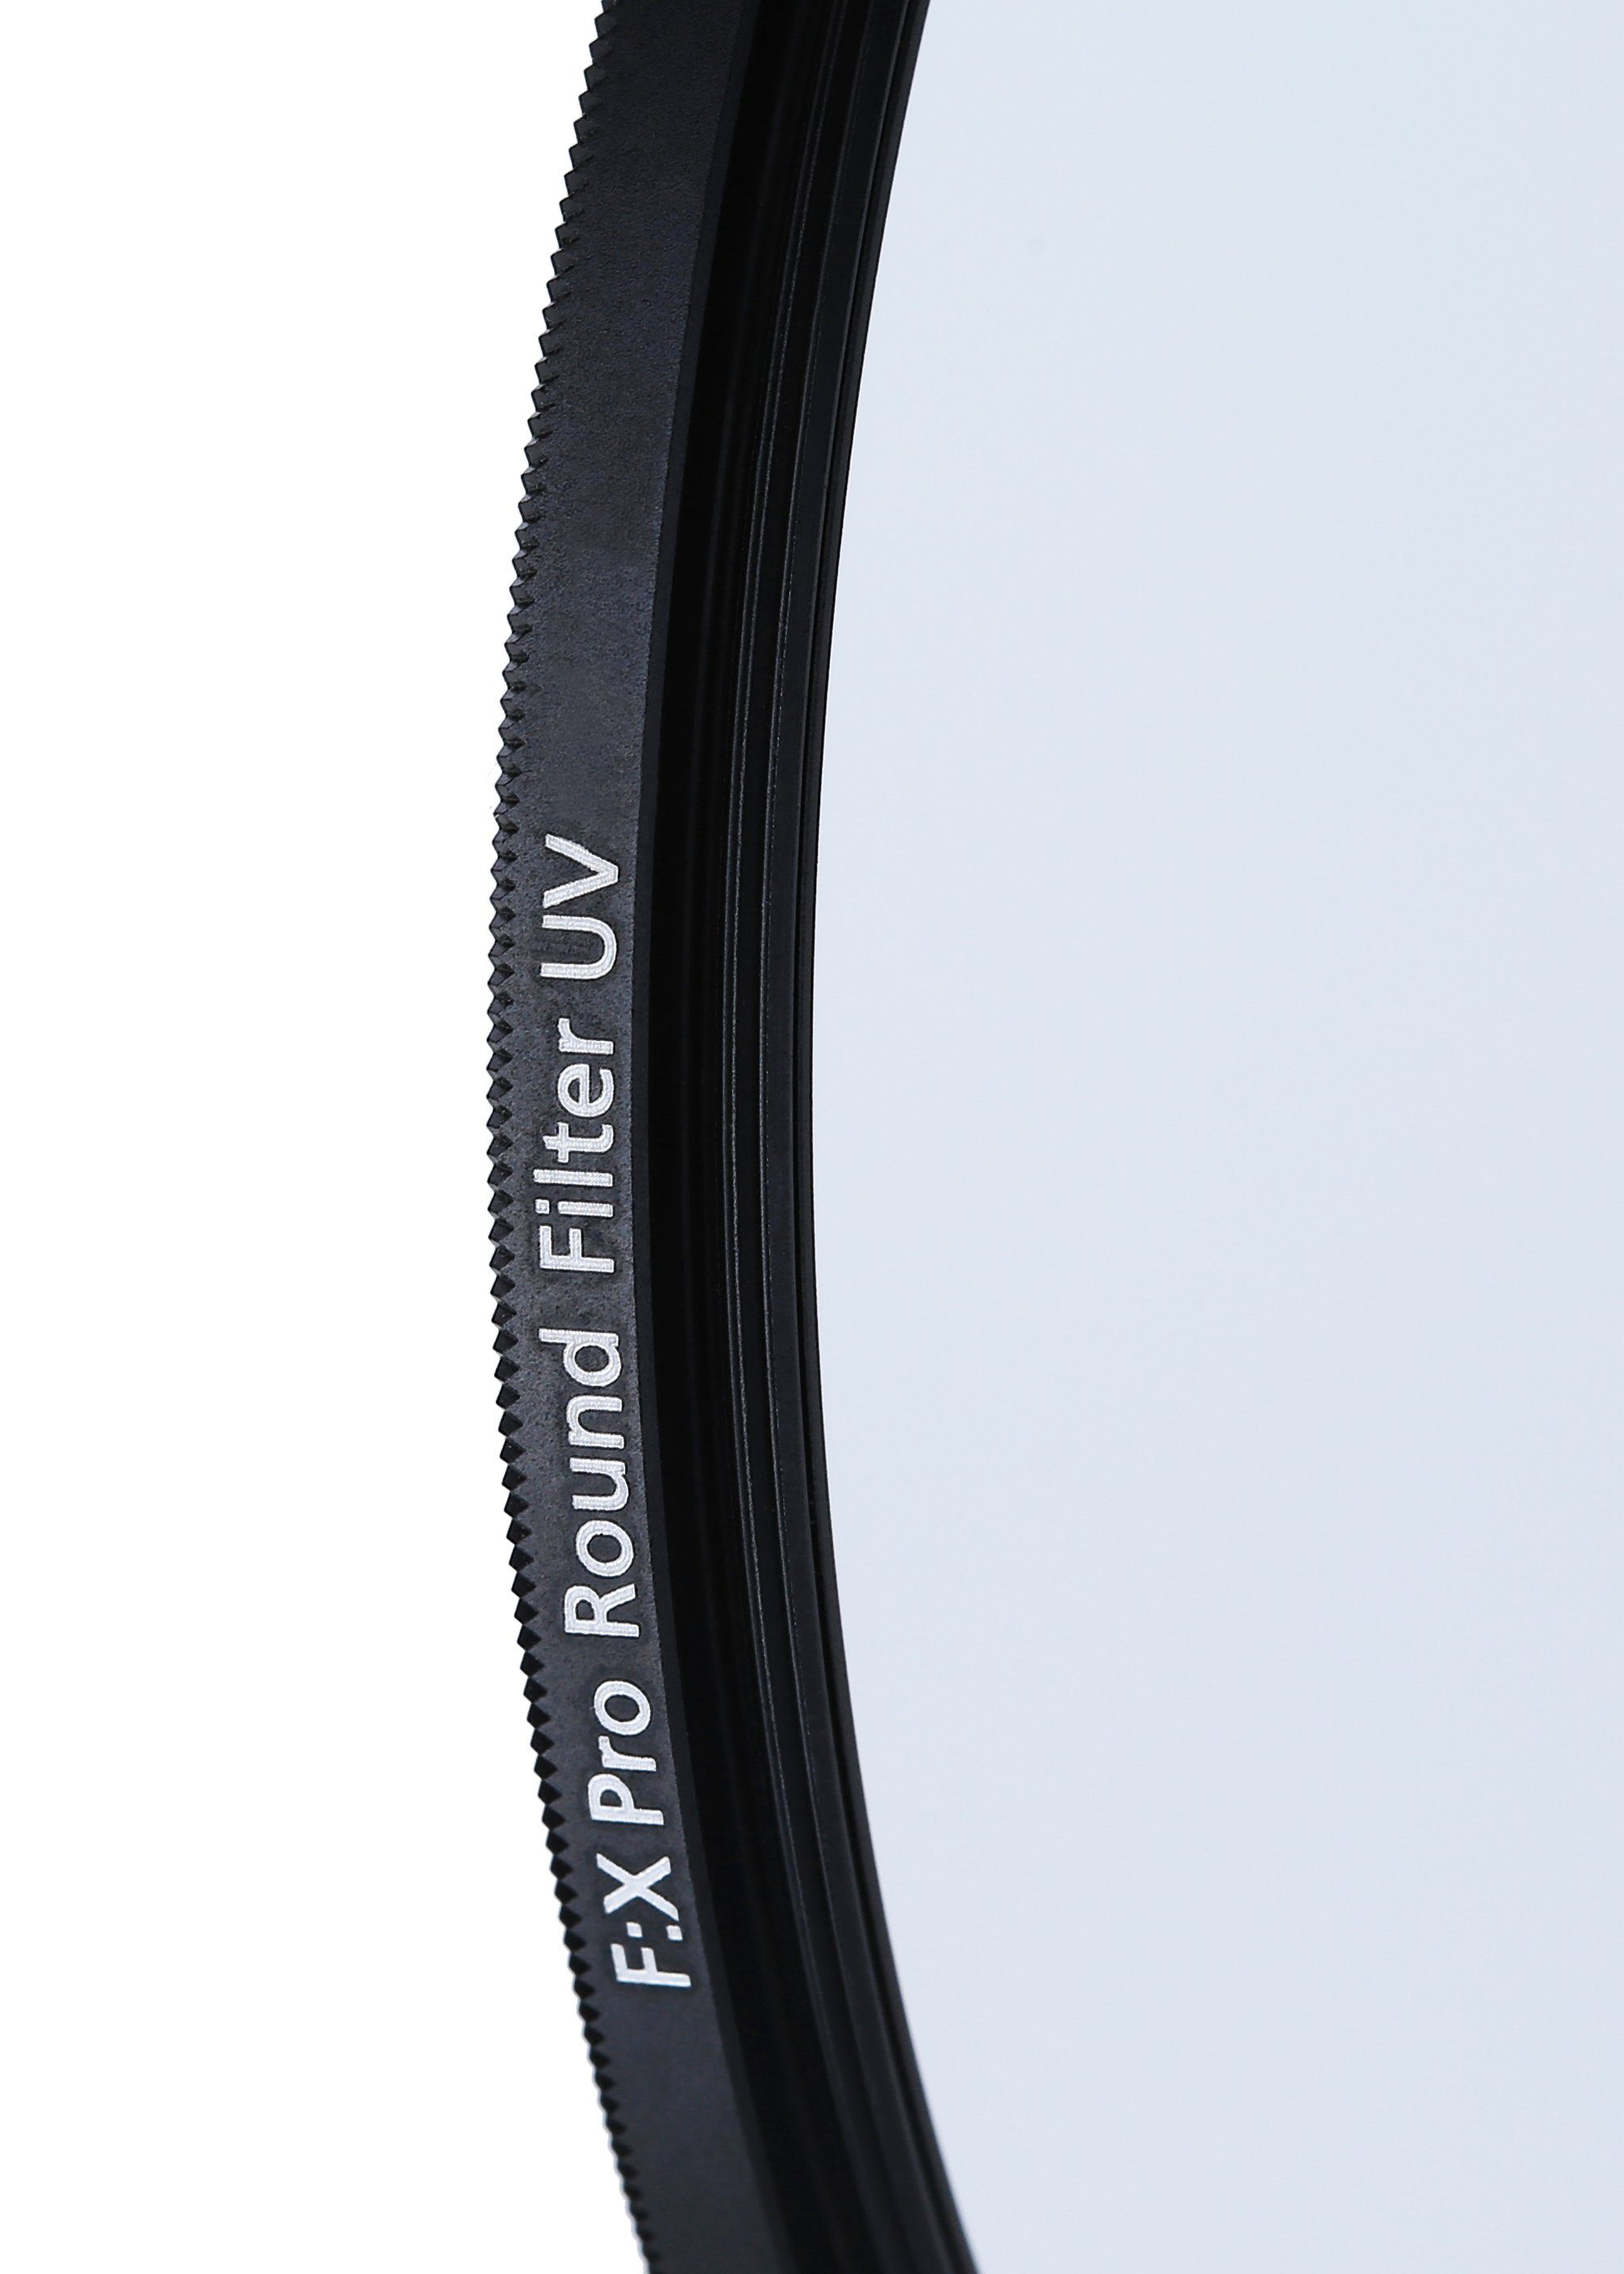 Rollei Pro Glas) kratzfestem Objektivzubehör mm F:X 77 Filter UV (aus Rollei